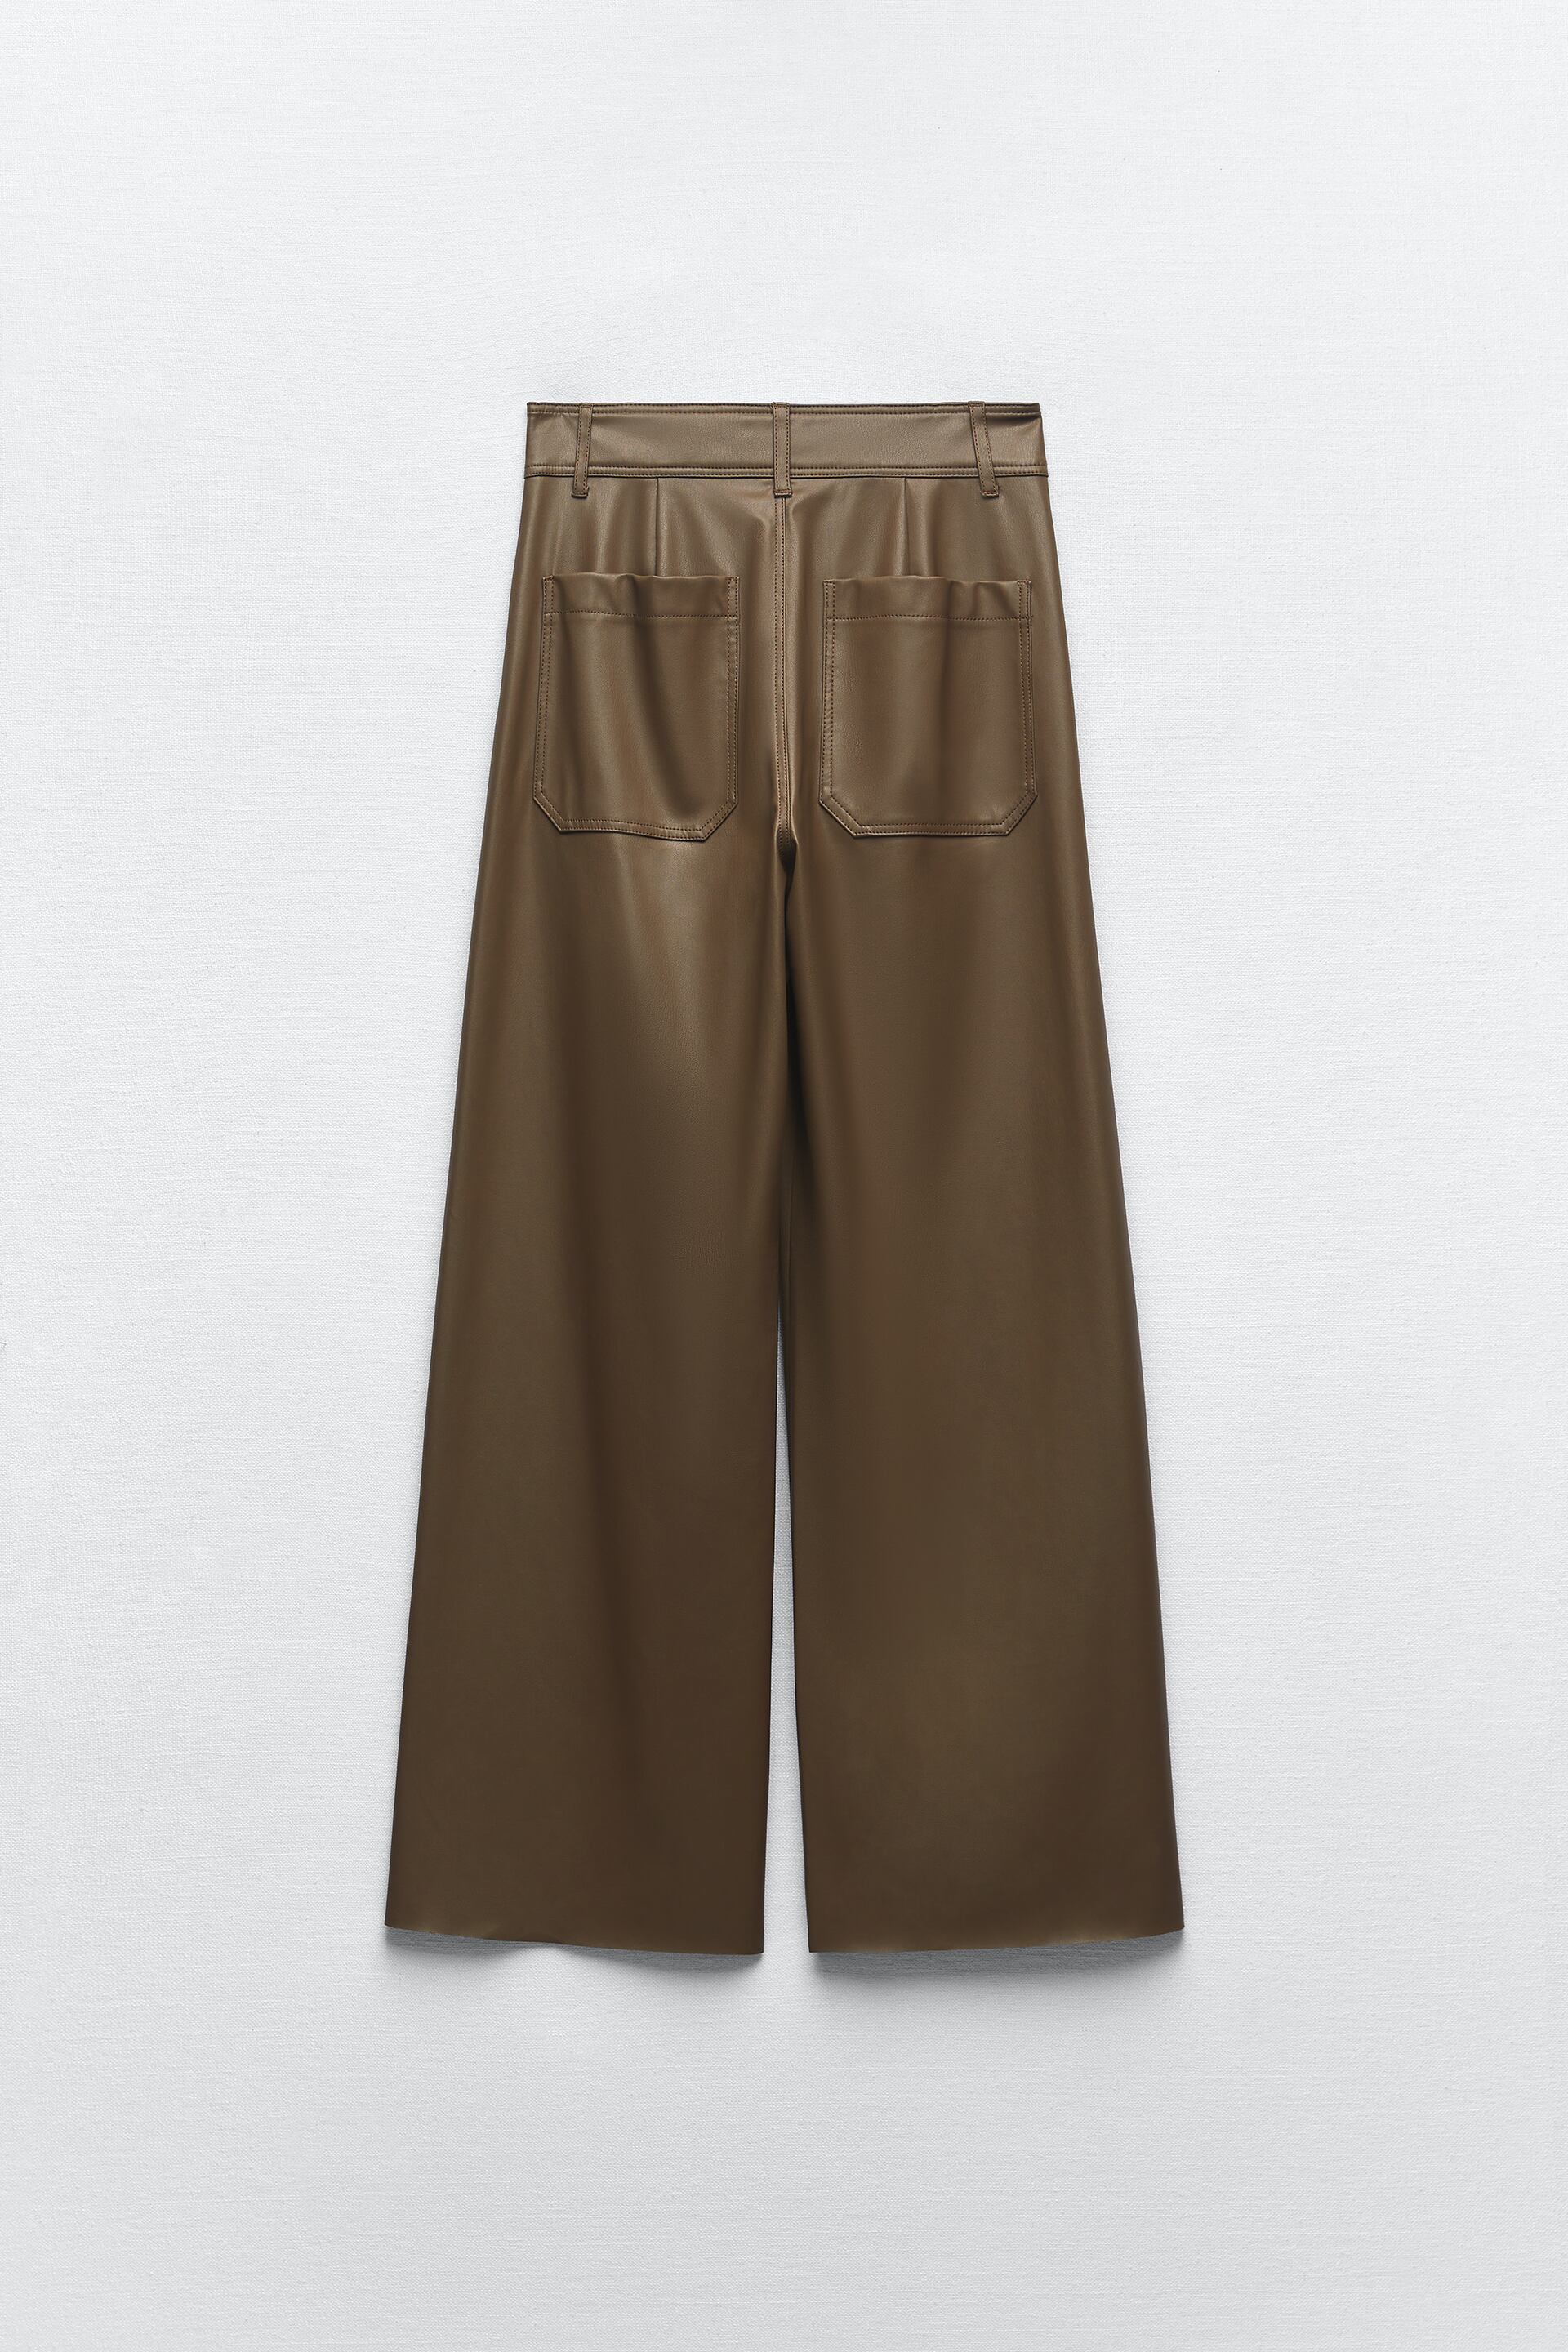 2023 : découvrez cette nouvelle version du pantalon ZW The Marine droit en matière synthétique marron chez Zara !